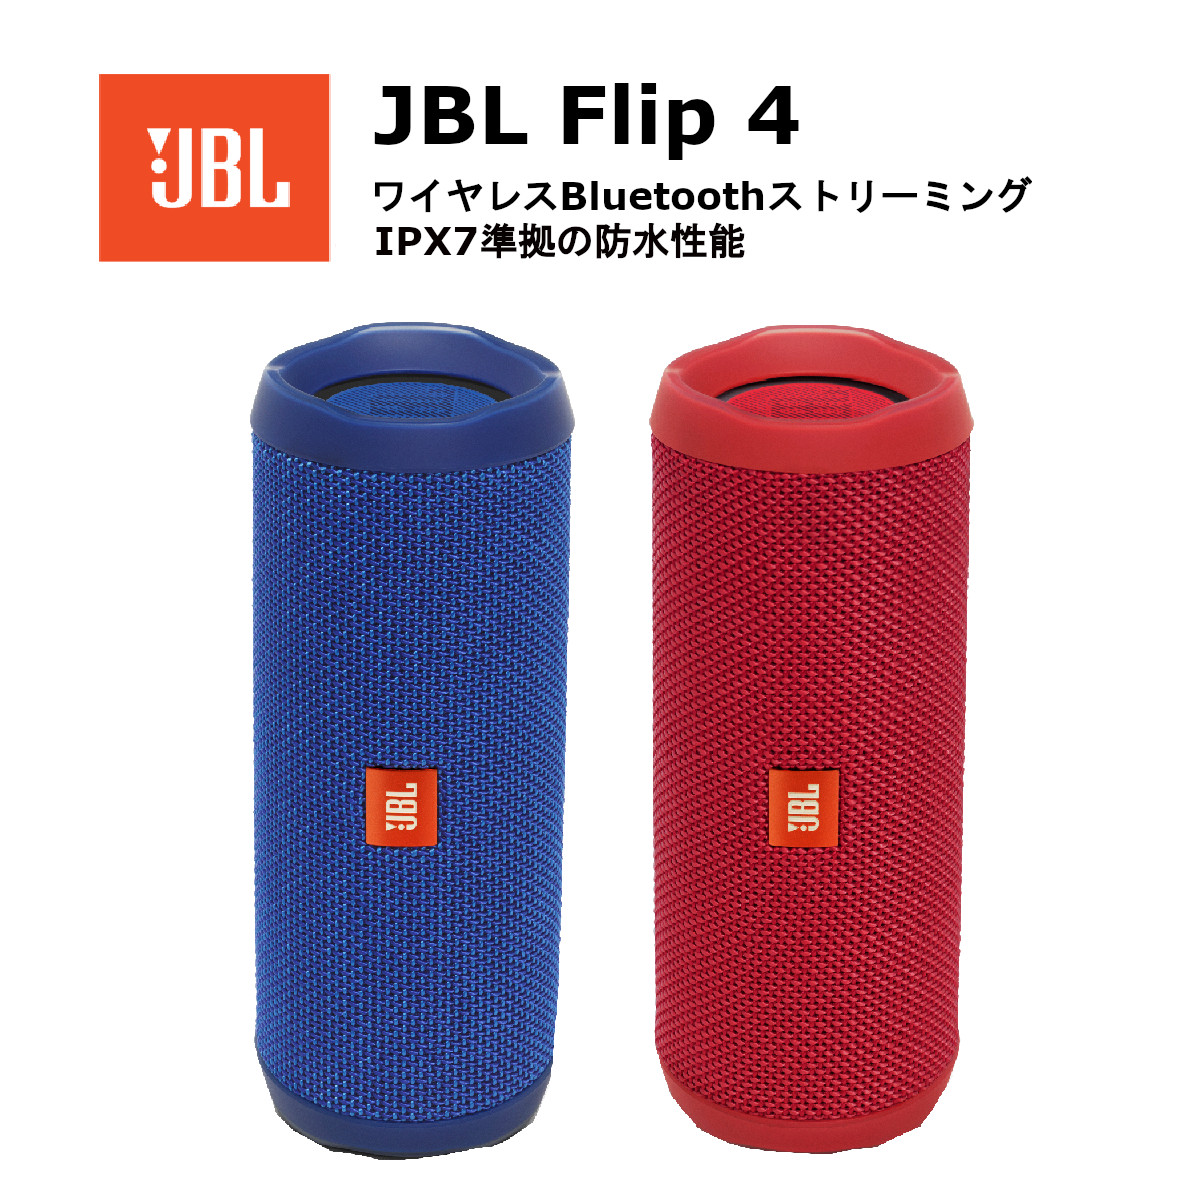 JBL FLIP4 Bluetoothスピーカー IPX7防水 パッシブラジエーター搭載